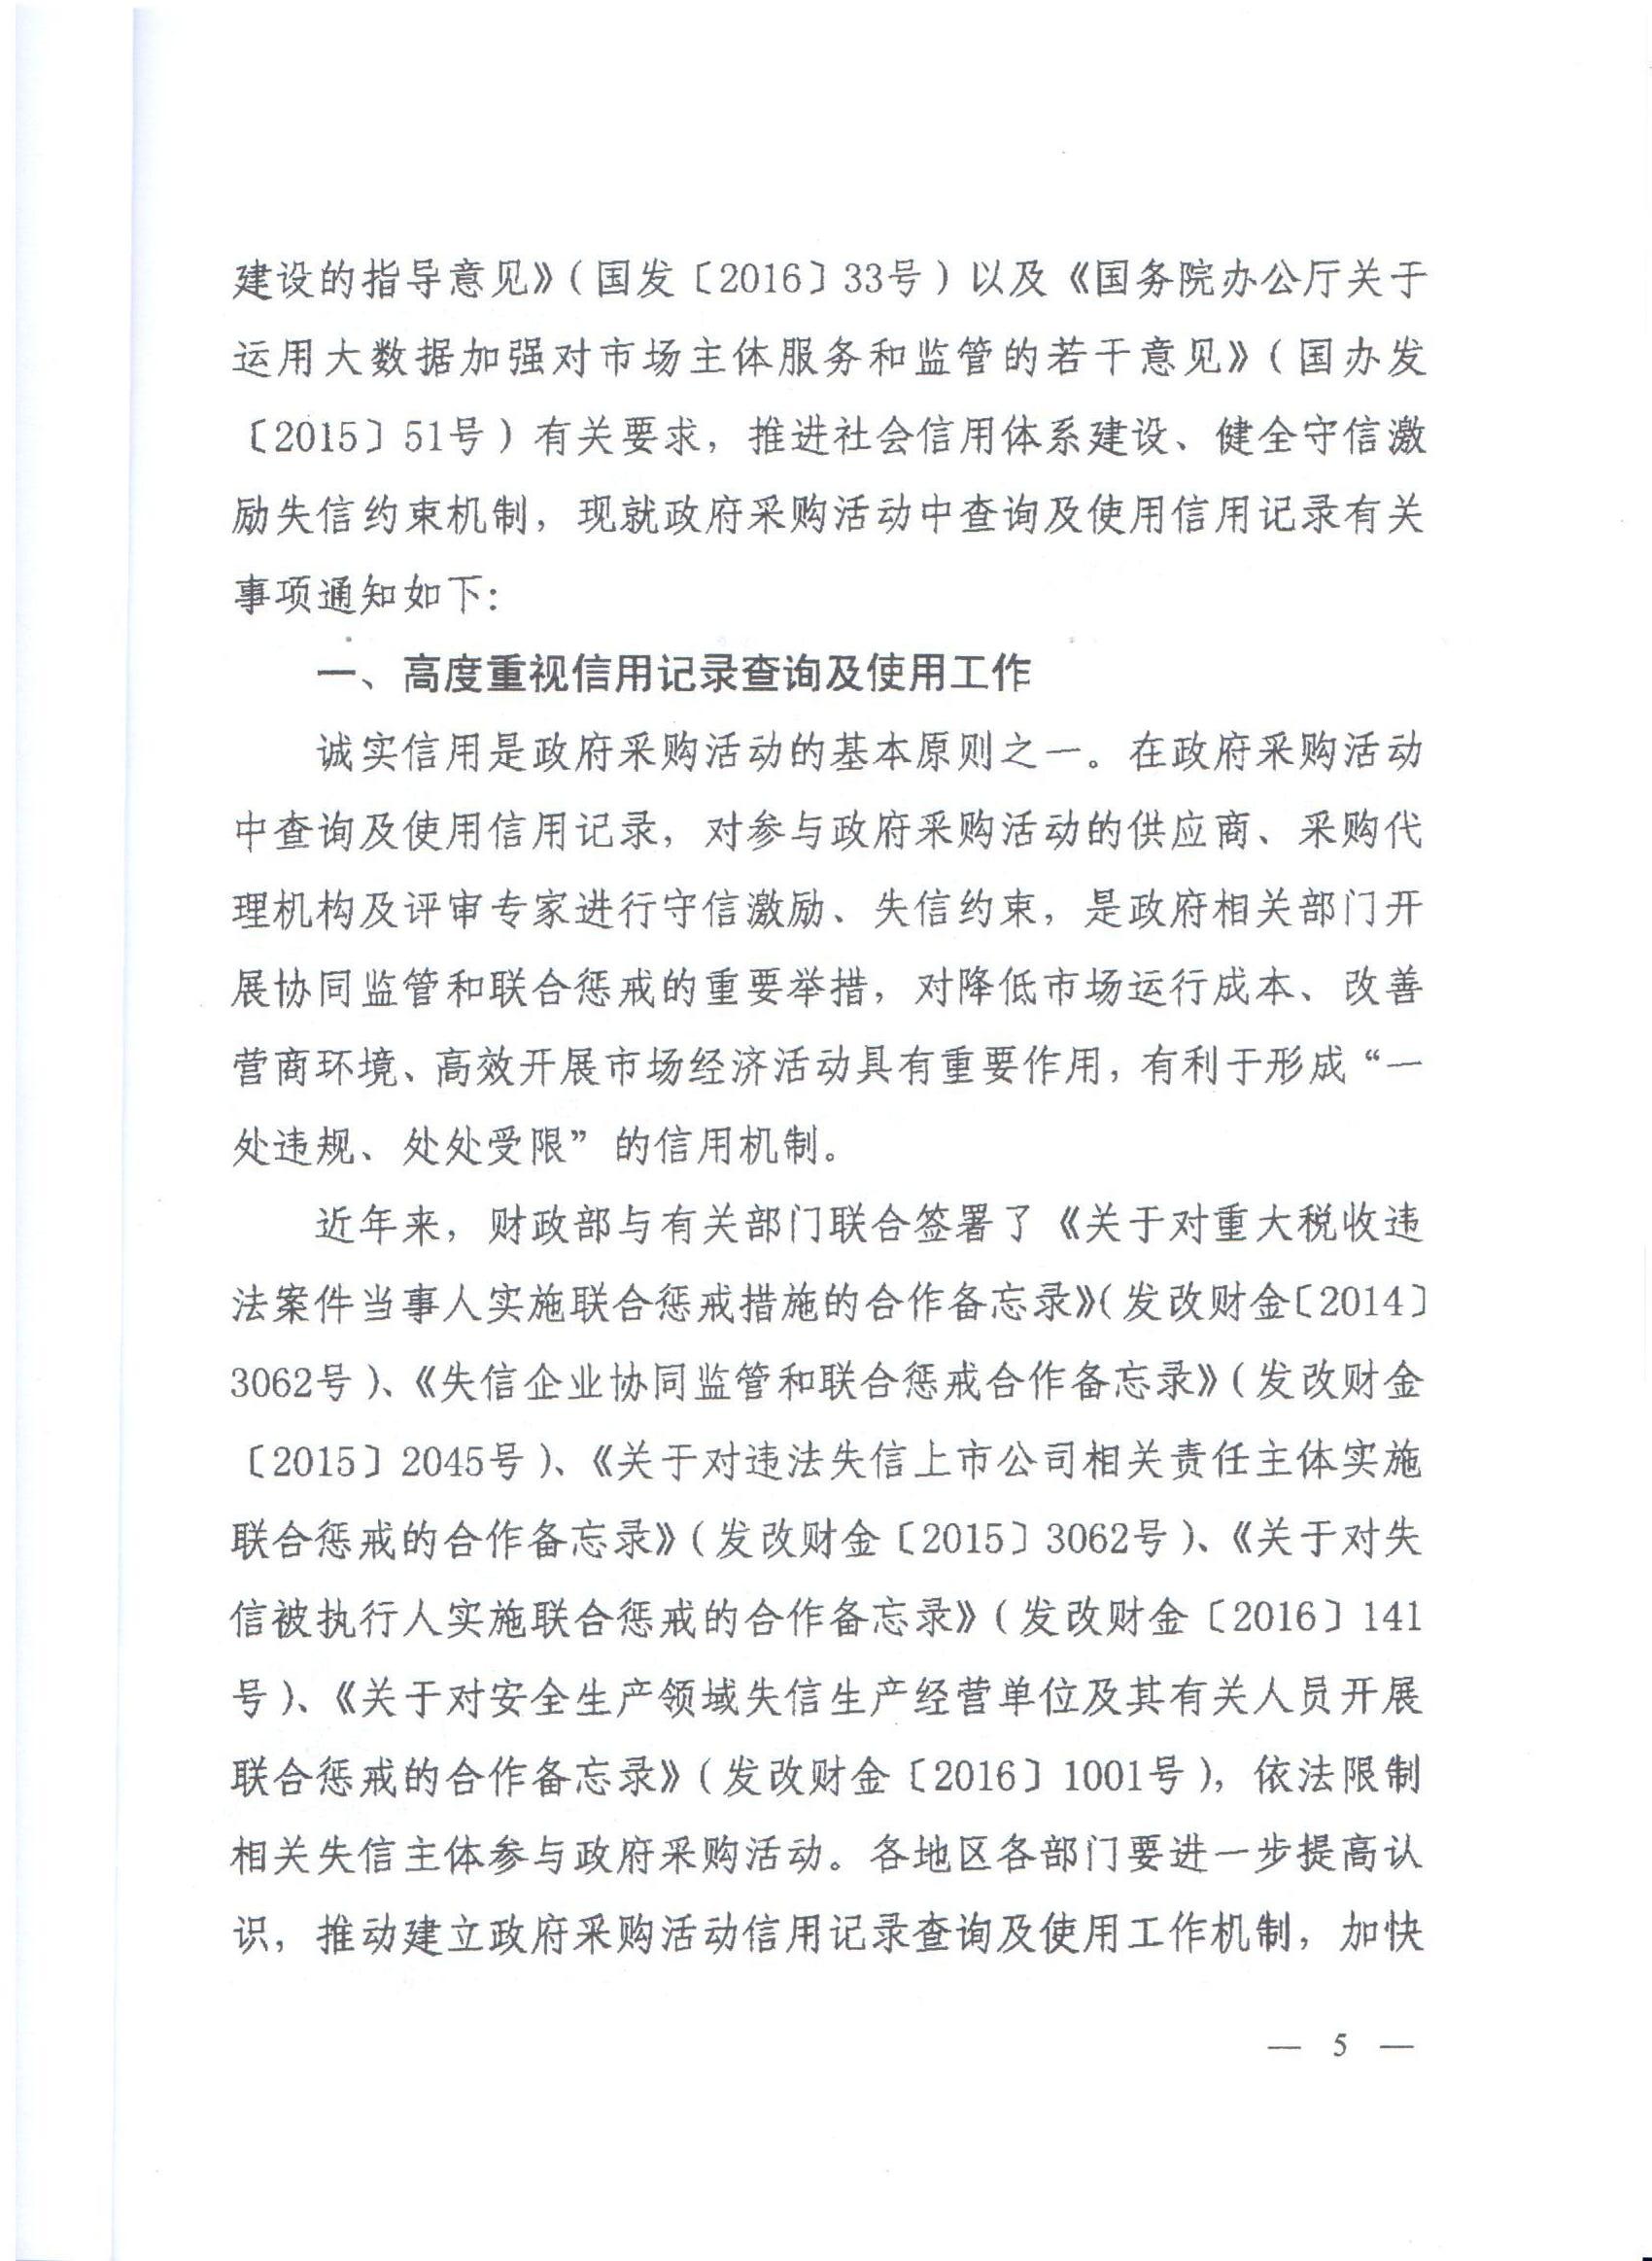 河南省财政厅转发财政部关于在政府采购活动中查询及使用信用记录有关问题的通知的通知(图5)